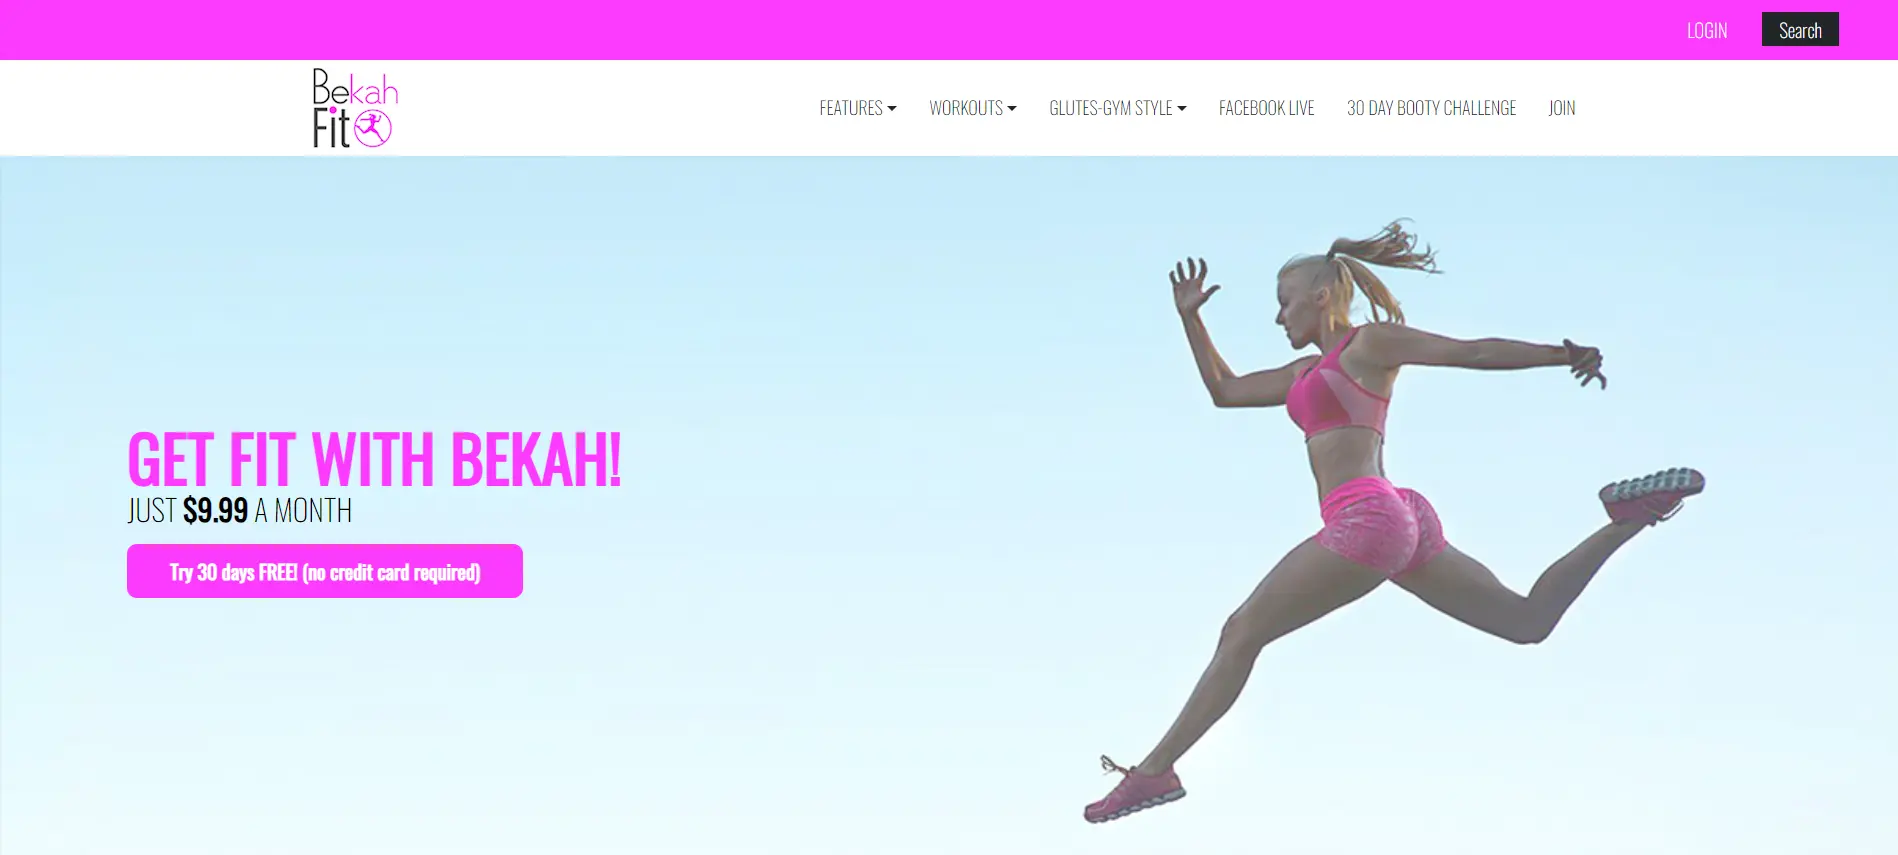 Bekah Fit - Membership Website Ideas